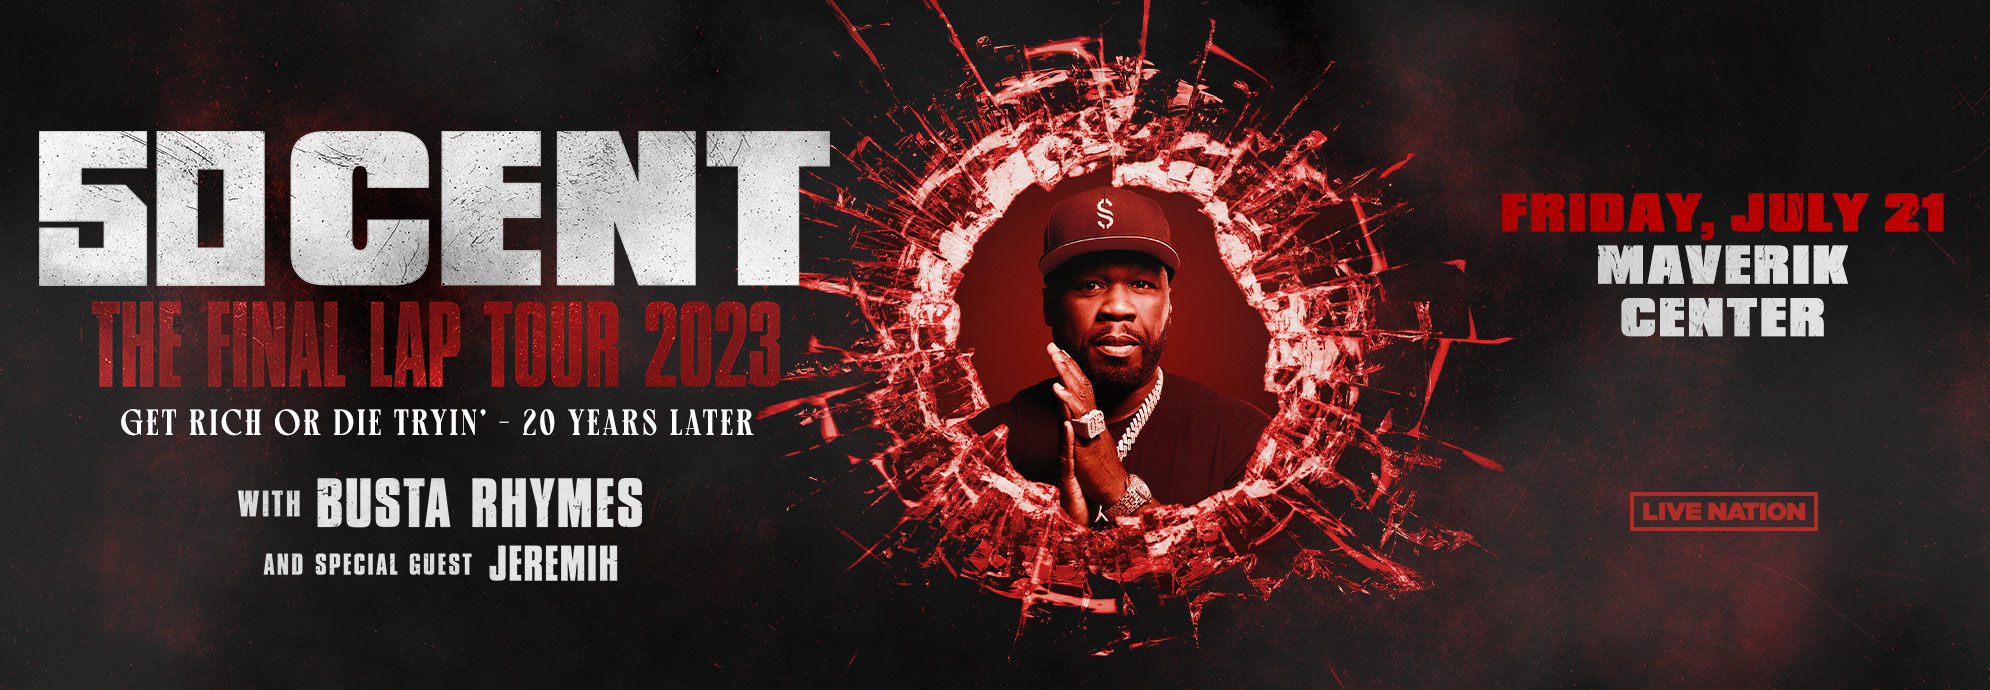 50 Cent - The Final Lap Tour